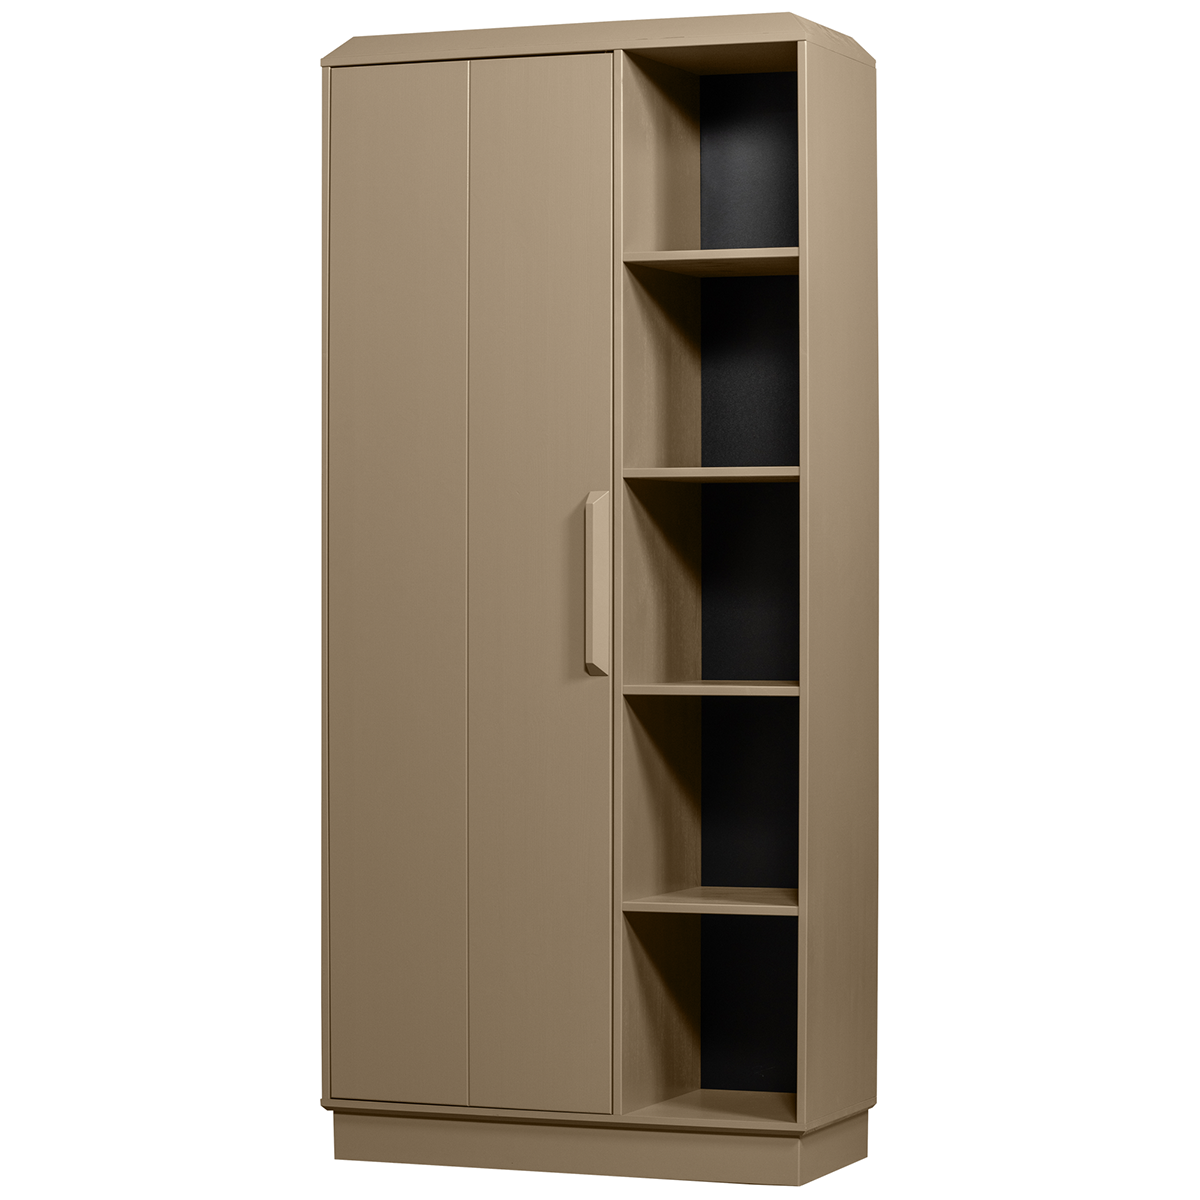 Lowen Mud Pine Wood Storage Cabinet